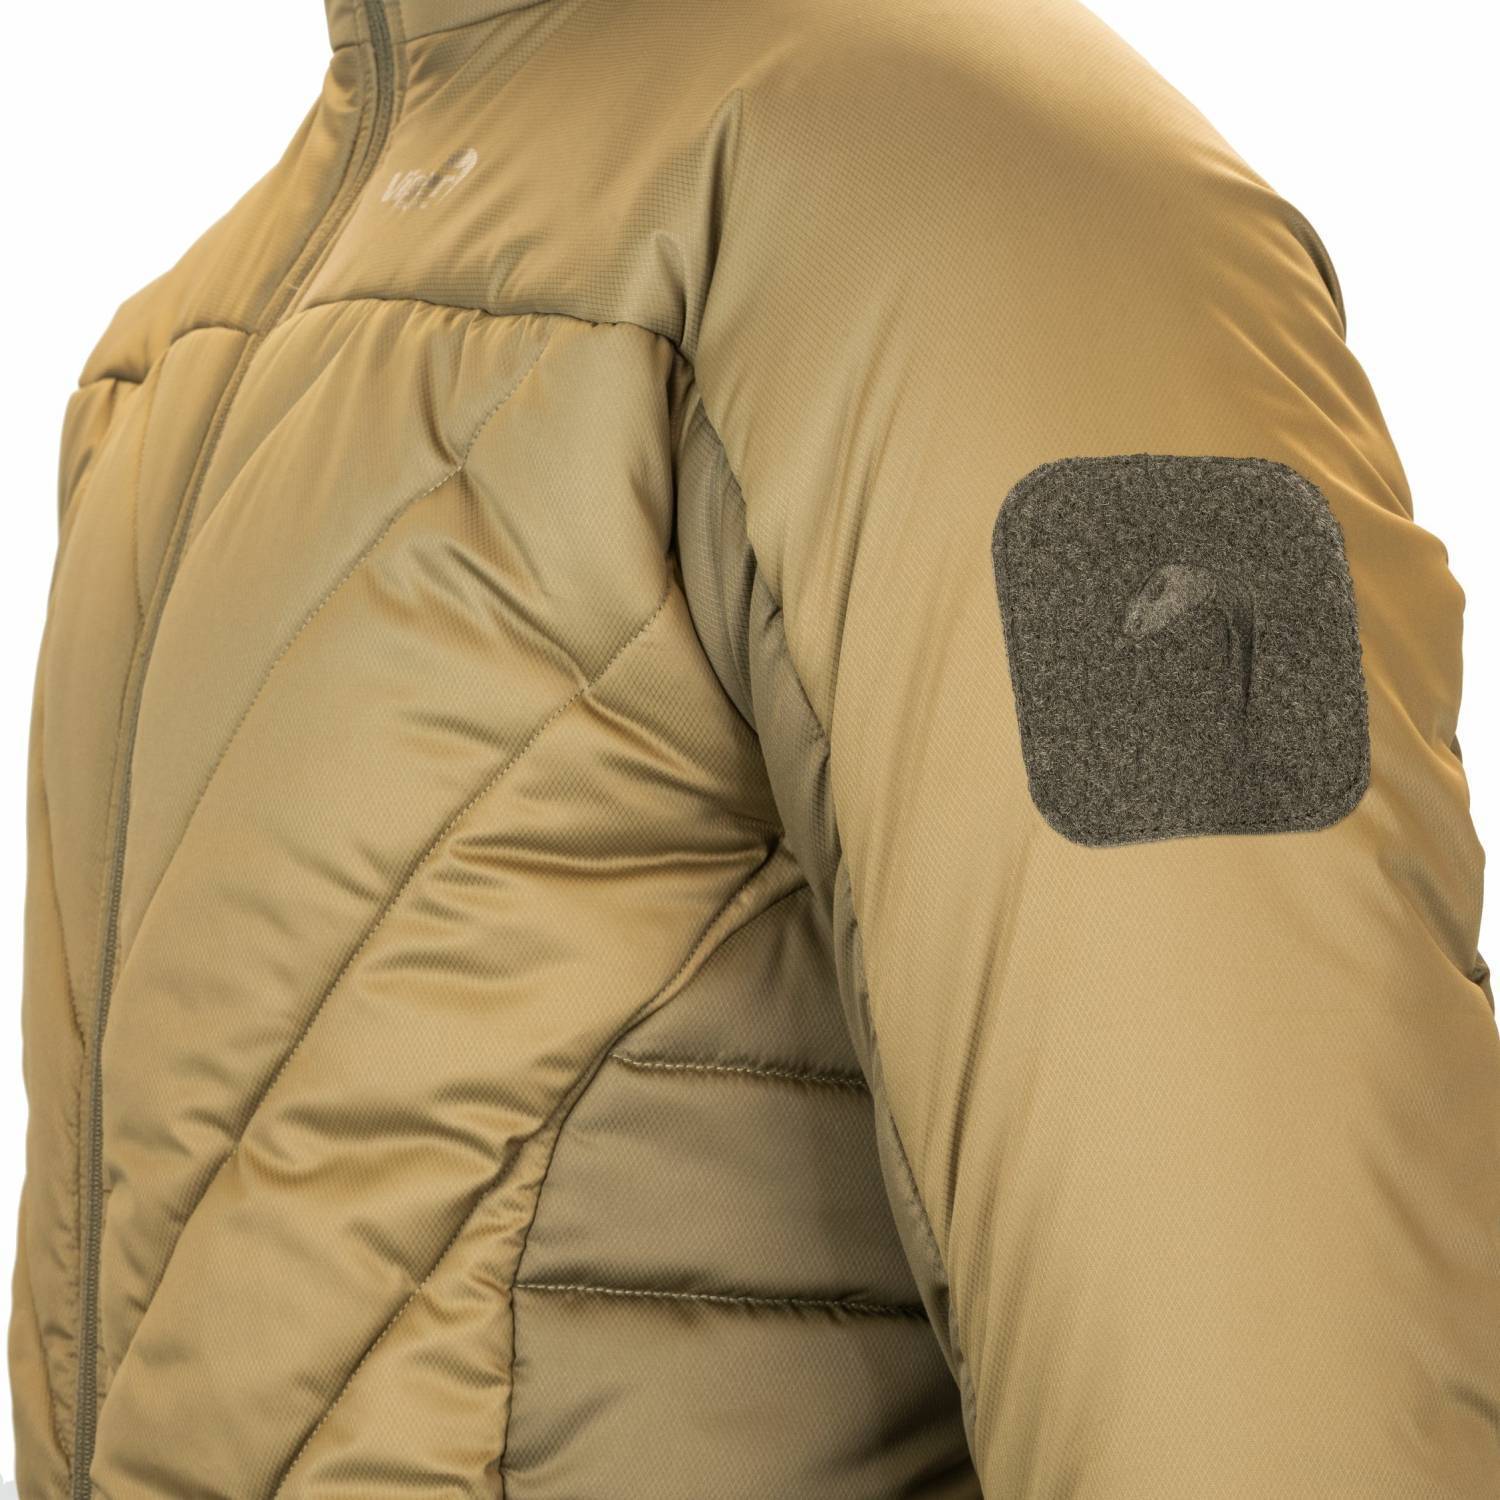 Viper Tactical Ultima Jacket | Viper Snugee Jacket